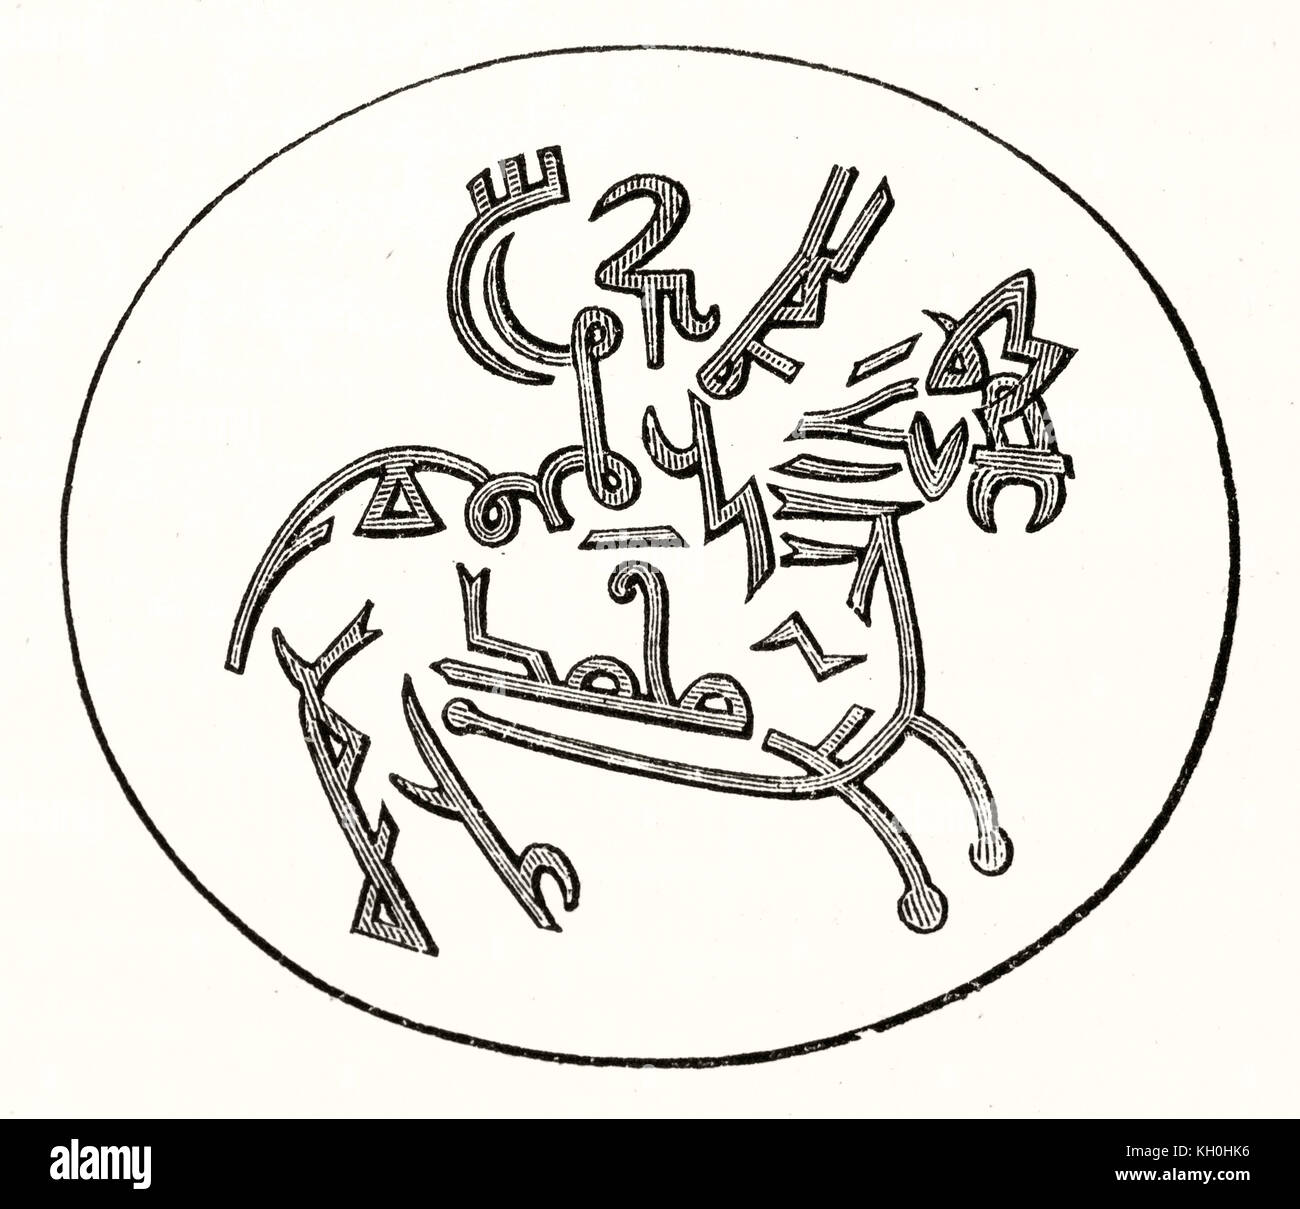 Vecchia riproduzione inciso di arabi talismano che raffigura il profeta Maometto in sella cavallo alato Buraq. Publ. su Magasin pittoresco, Parigi, 1847 Foto Stock